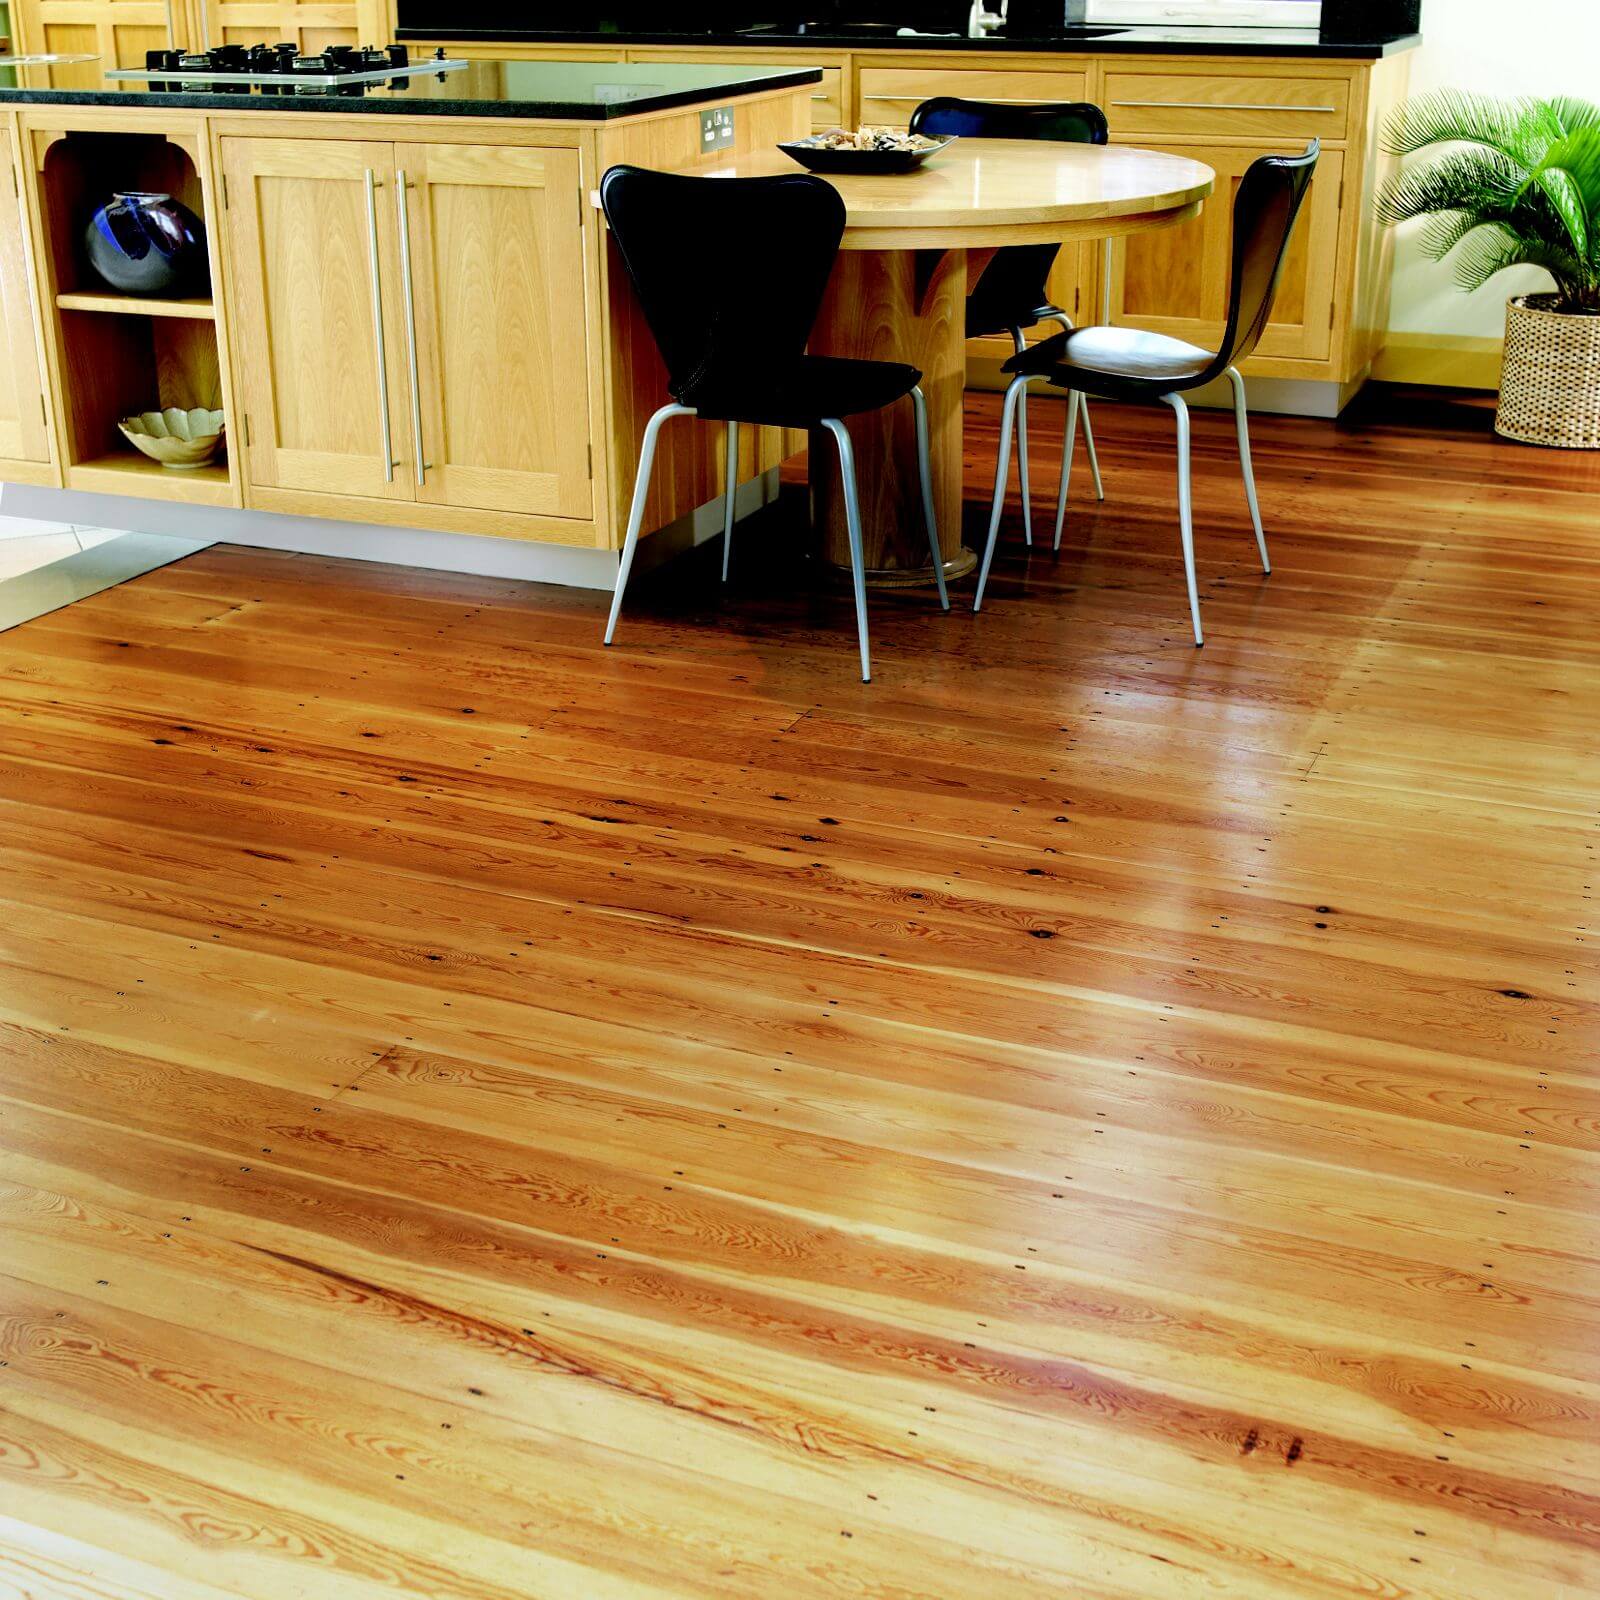 Ronseal Interior Wood Wax Walnut - 750ml